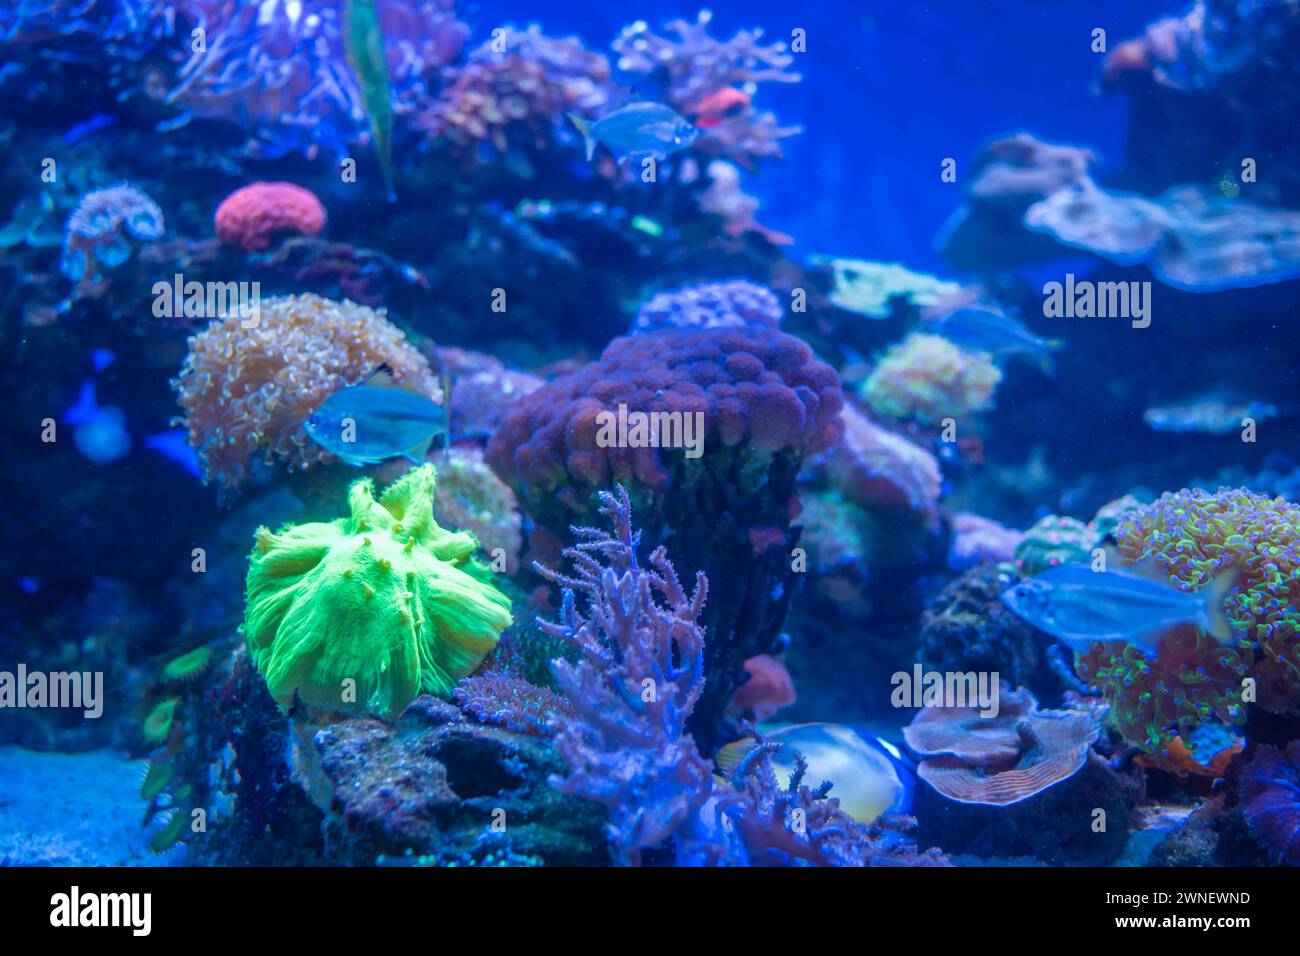 A luminescent Pectinia coral in aquarium. Stock Photo